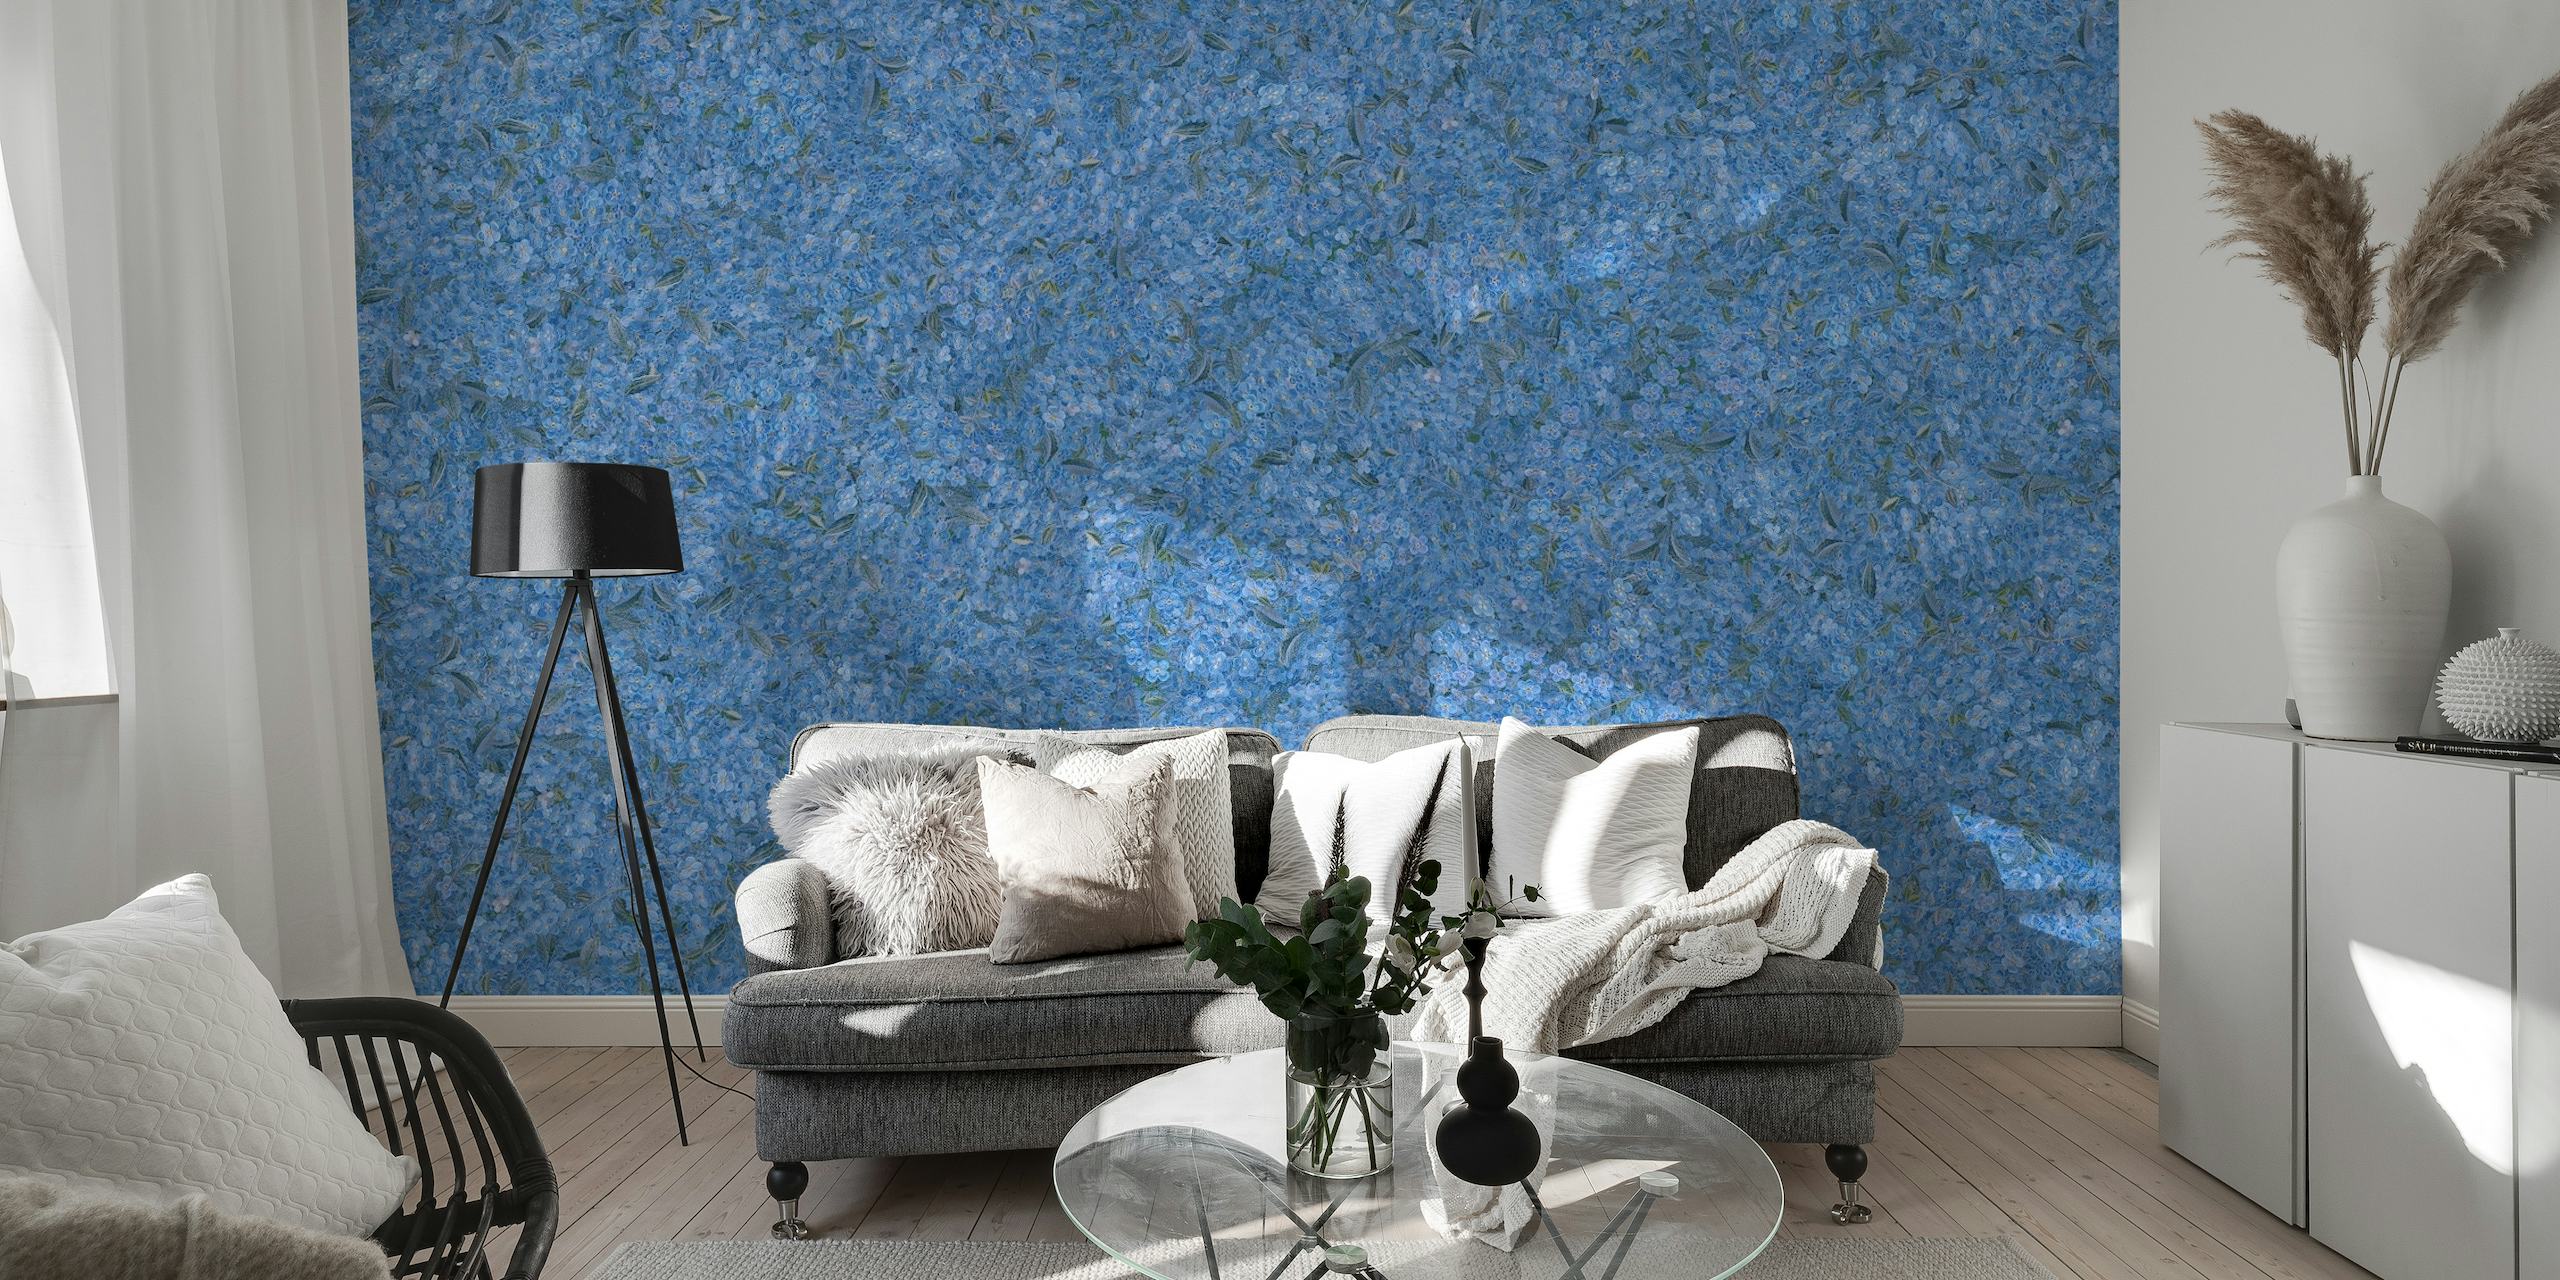 Förgätmigej-blommor i broderistil på en djupblå väggmålning